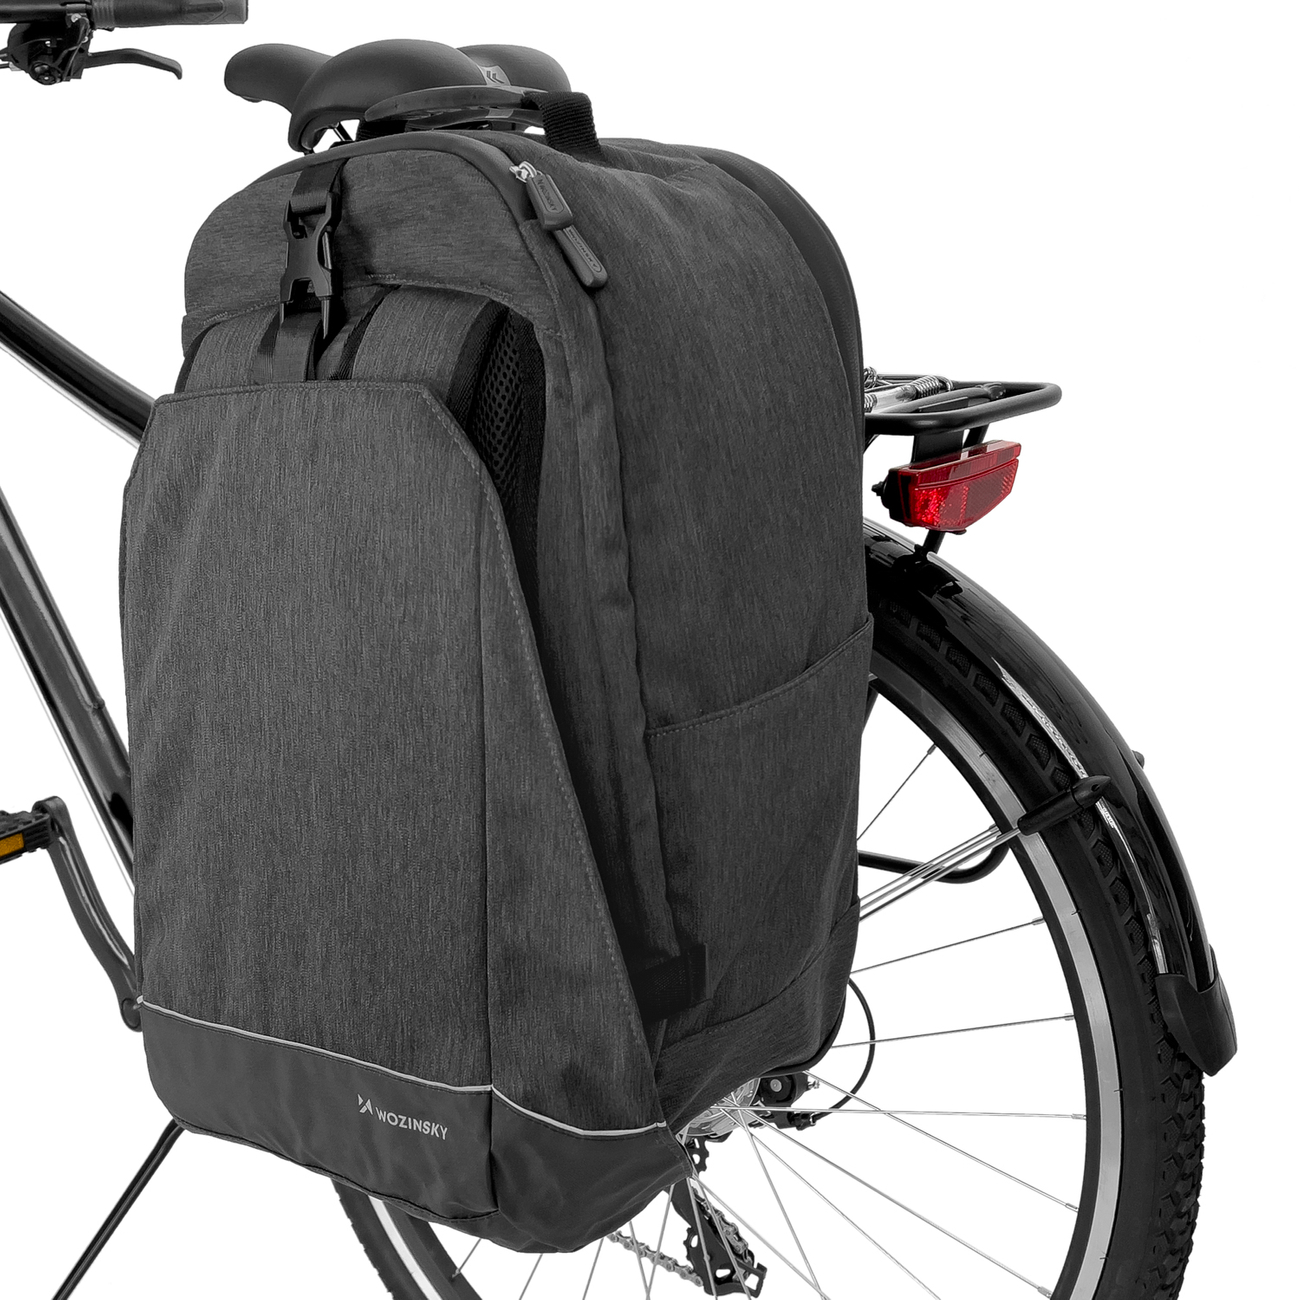 Uchwyt rowerowy Wozinsky torba rowerowa na baganik 2w1 40l WBB33BK czarny LG K10 (2017) / 2